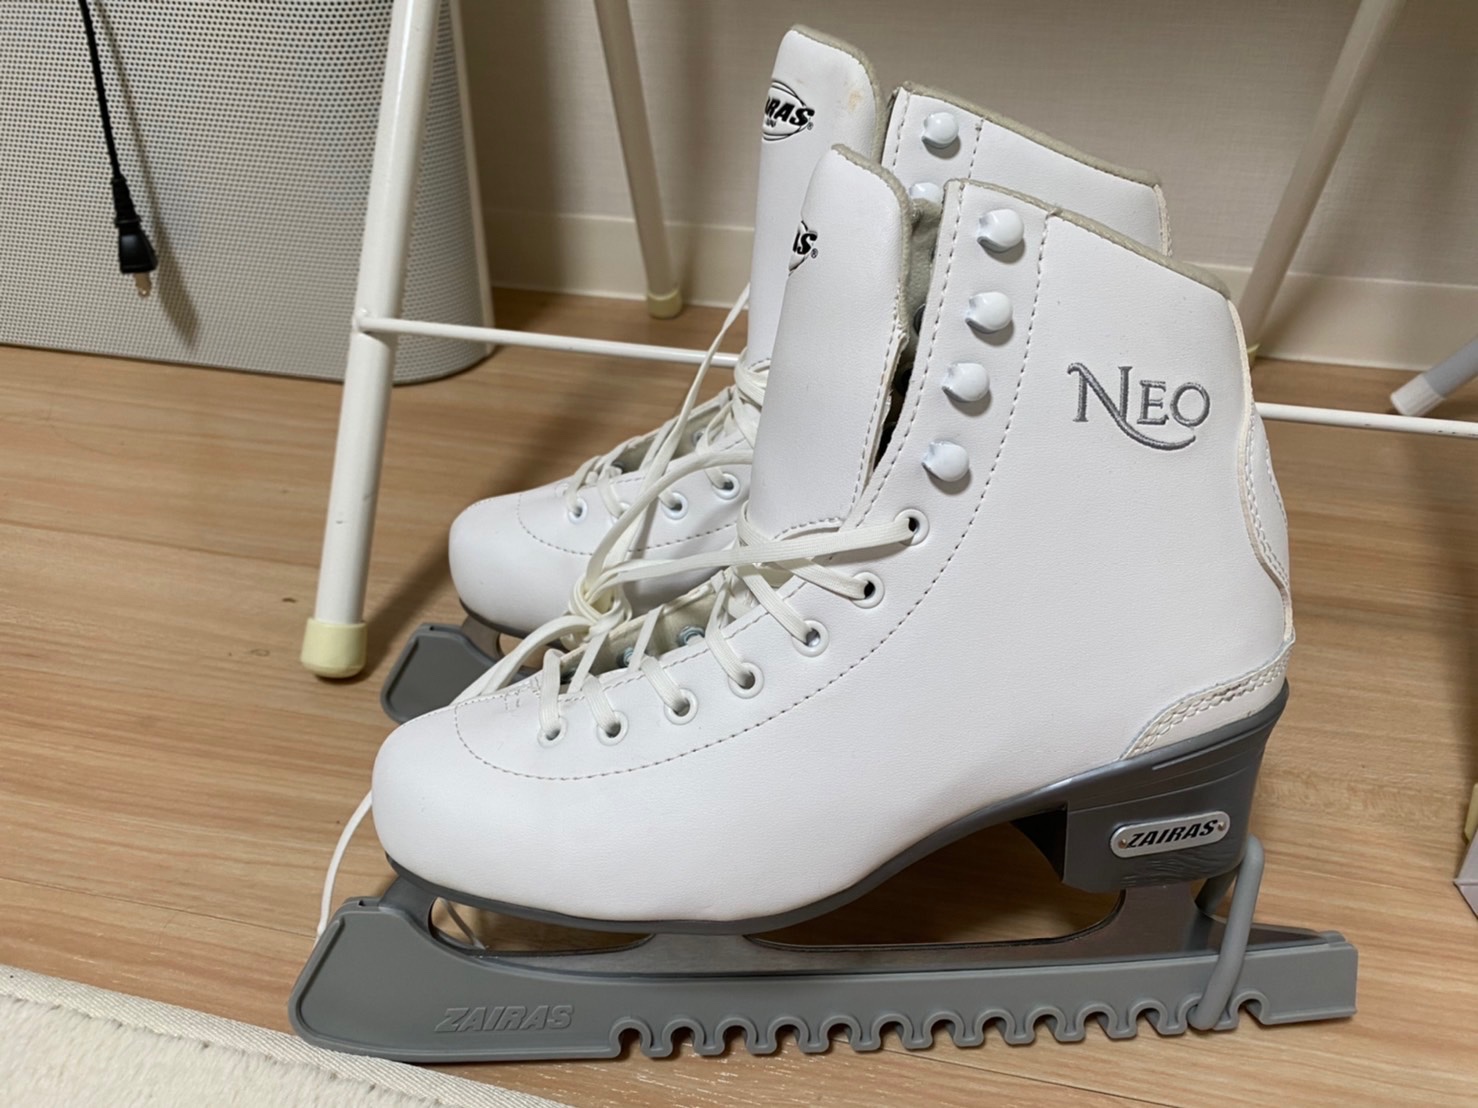 フィギュアスケート靴 ザイラス ZAIRAS Neo 16cm